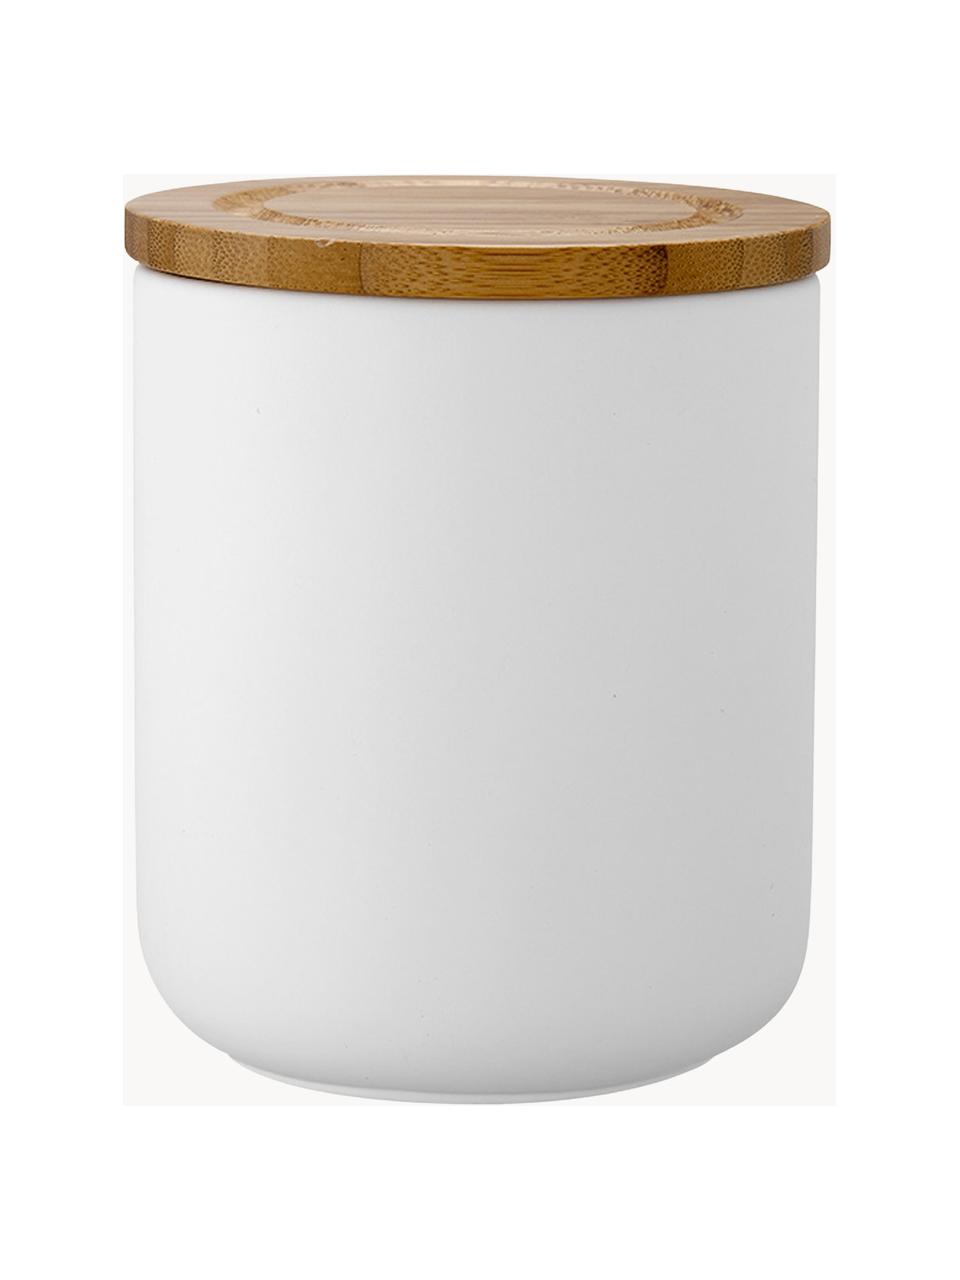 Opbergpot Stak, Pot: keramiek, Deksel: bamboehout, Wit, lichtbruin, Ø 10 x H 13 cm, 750 ml